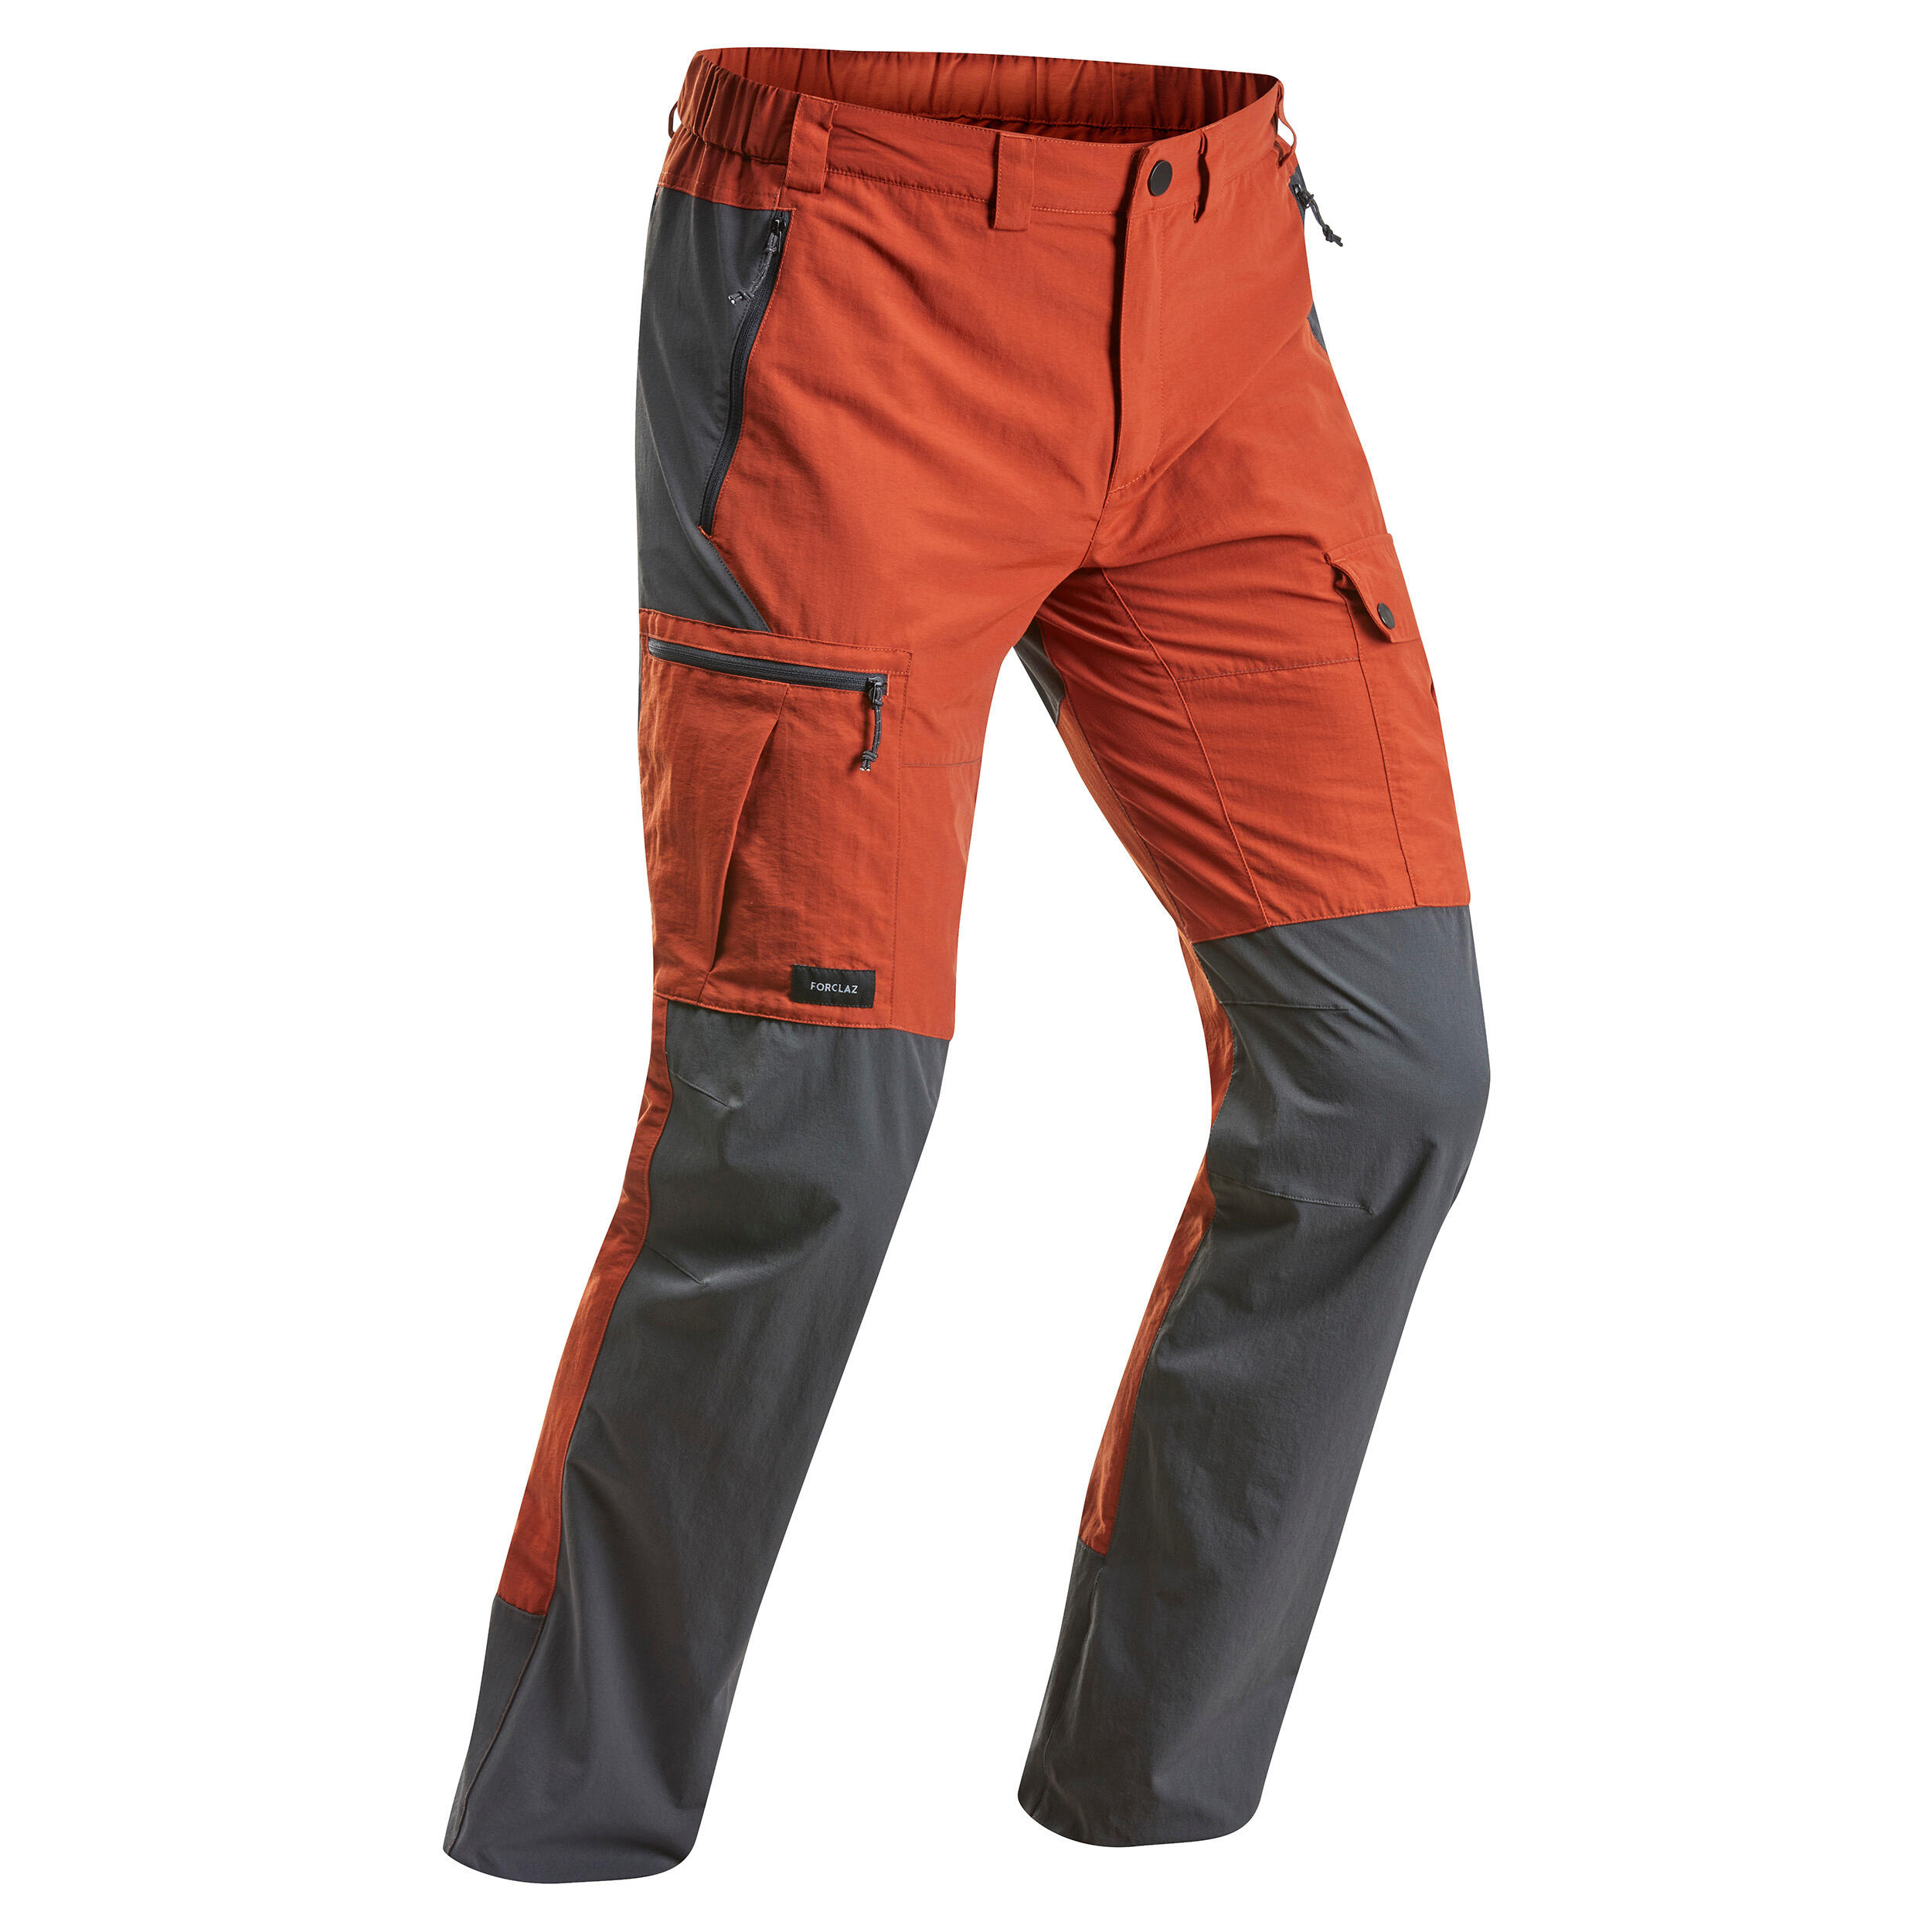 Mountain Hardware Mens Orange Red Hiking Pants size 42x30 | eBay